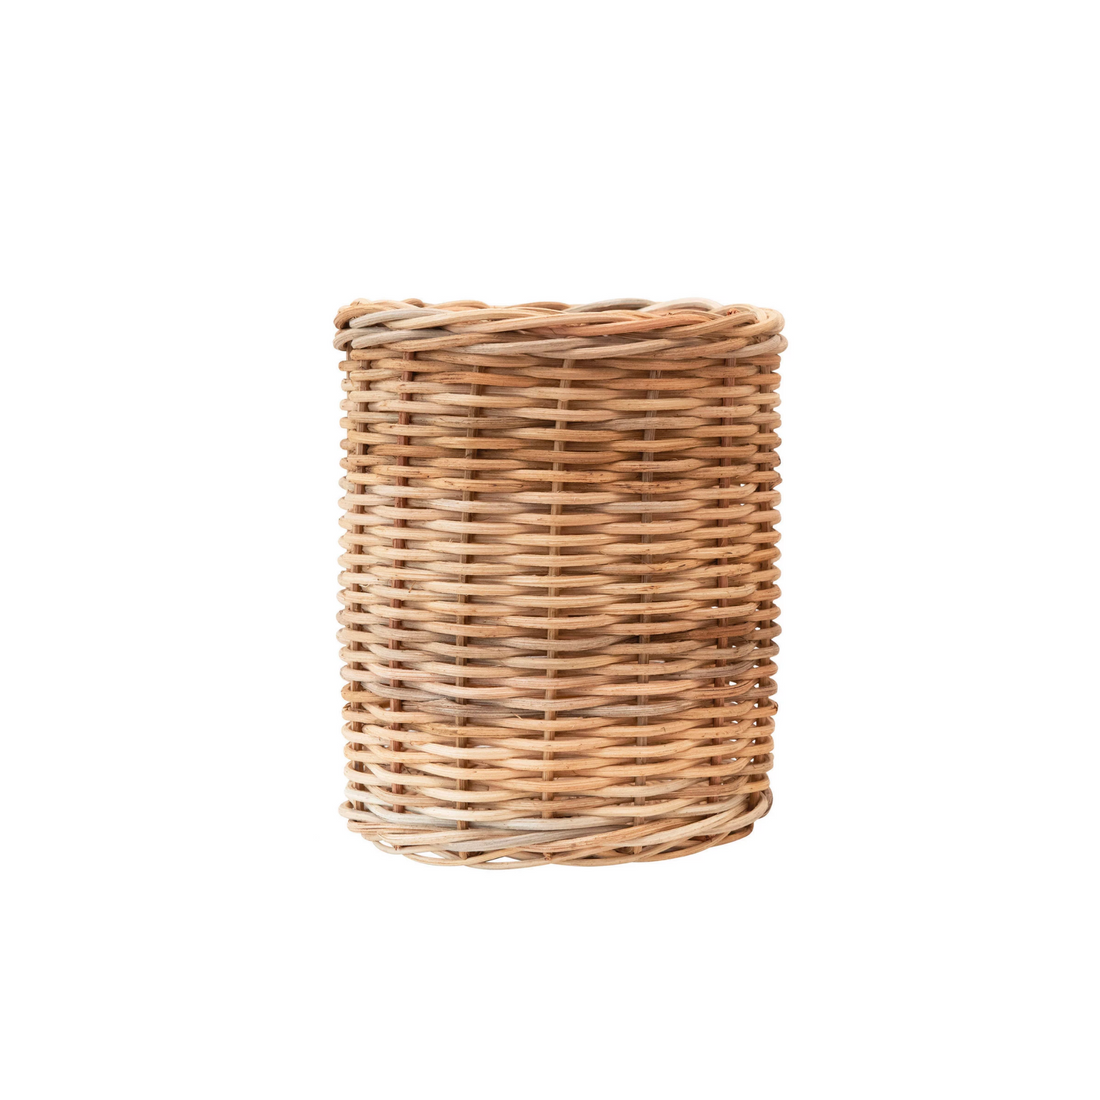 Handwoven Wicker Baskets